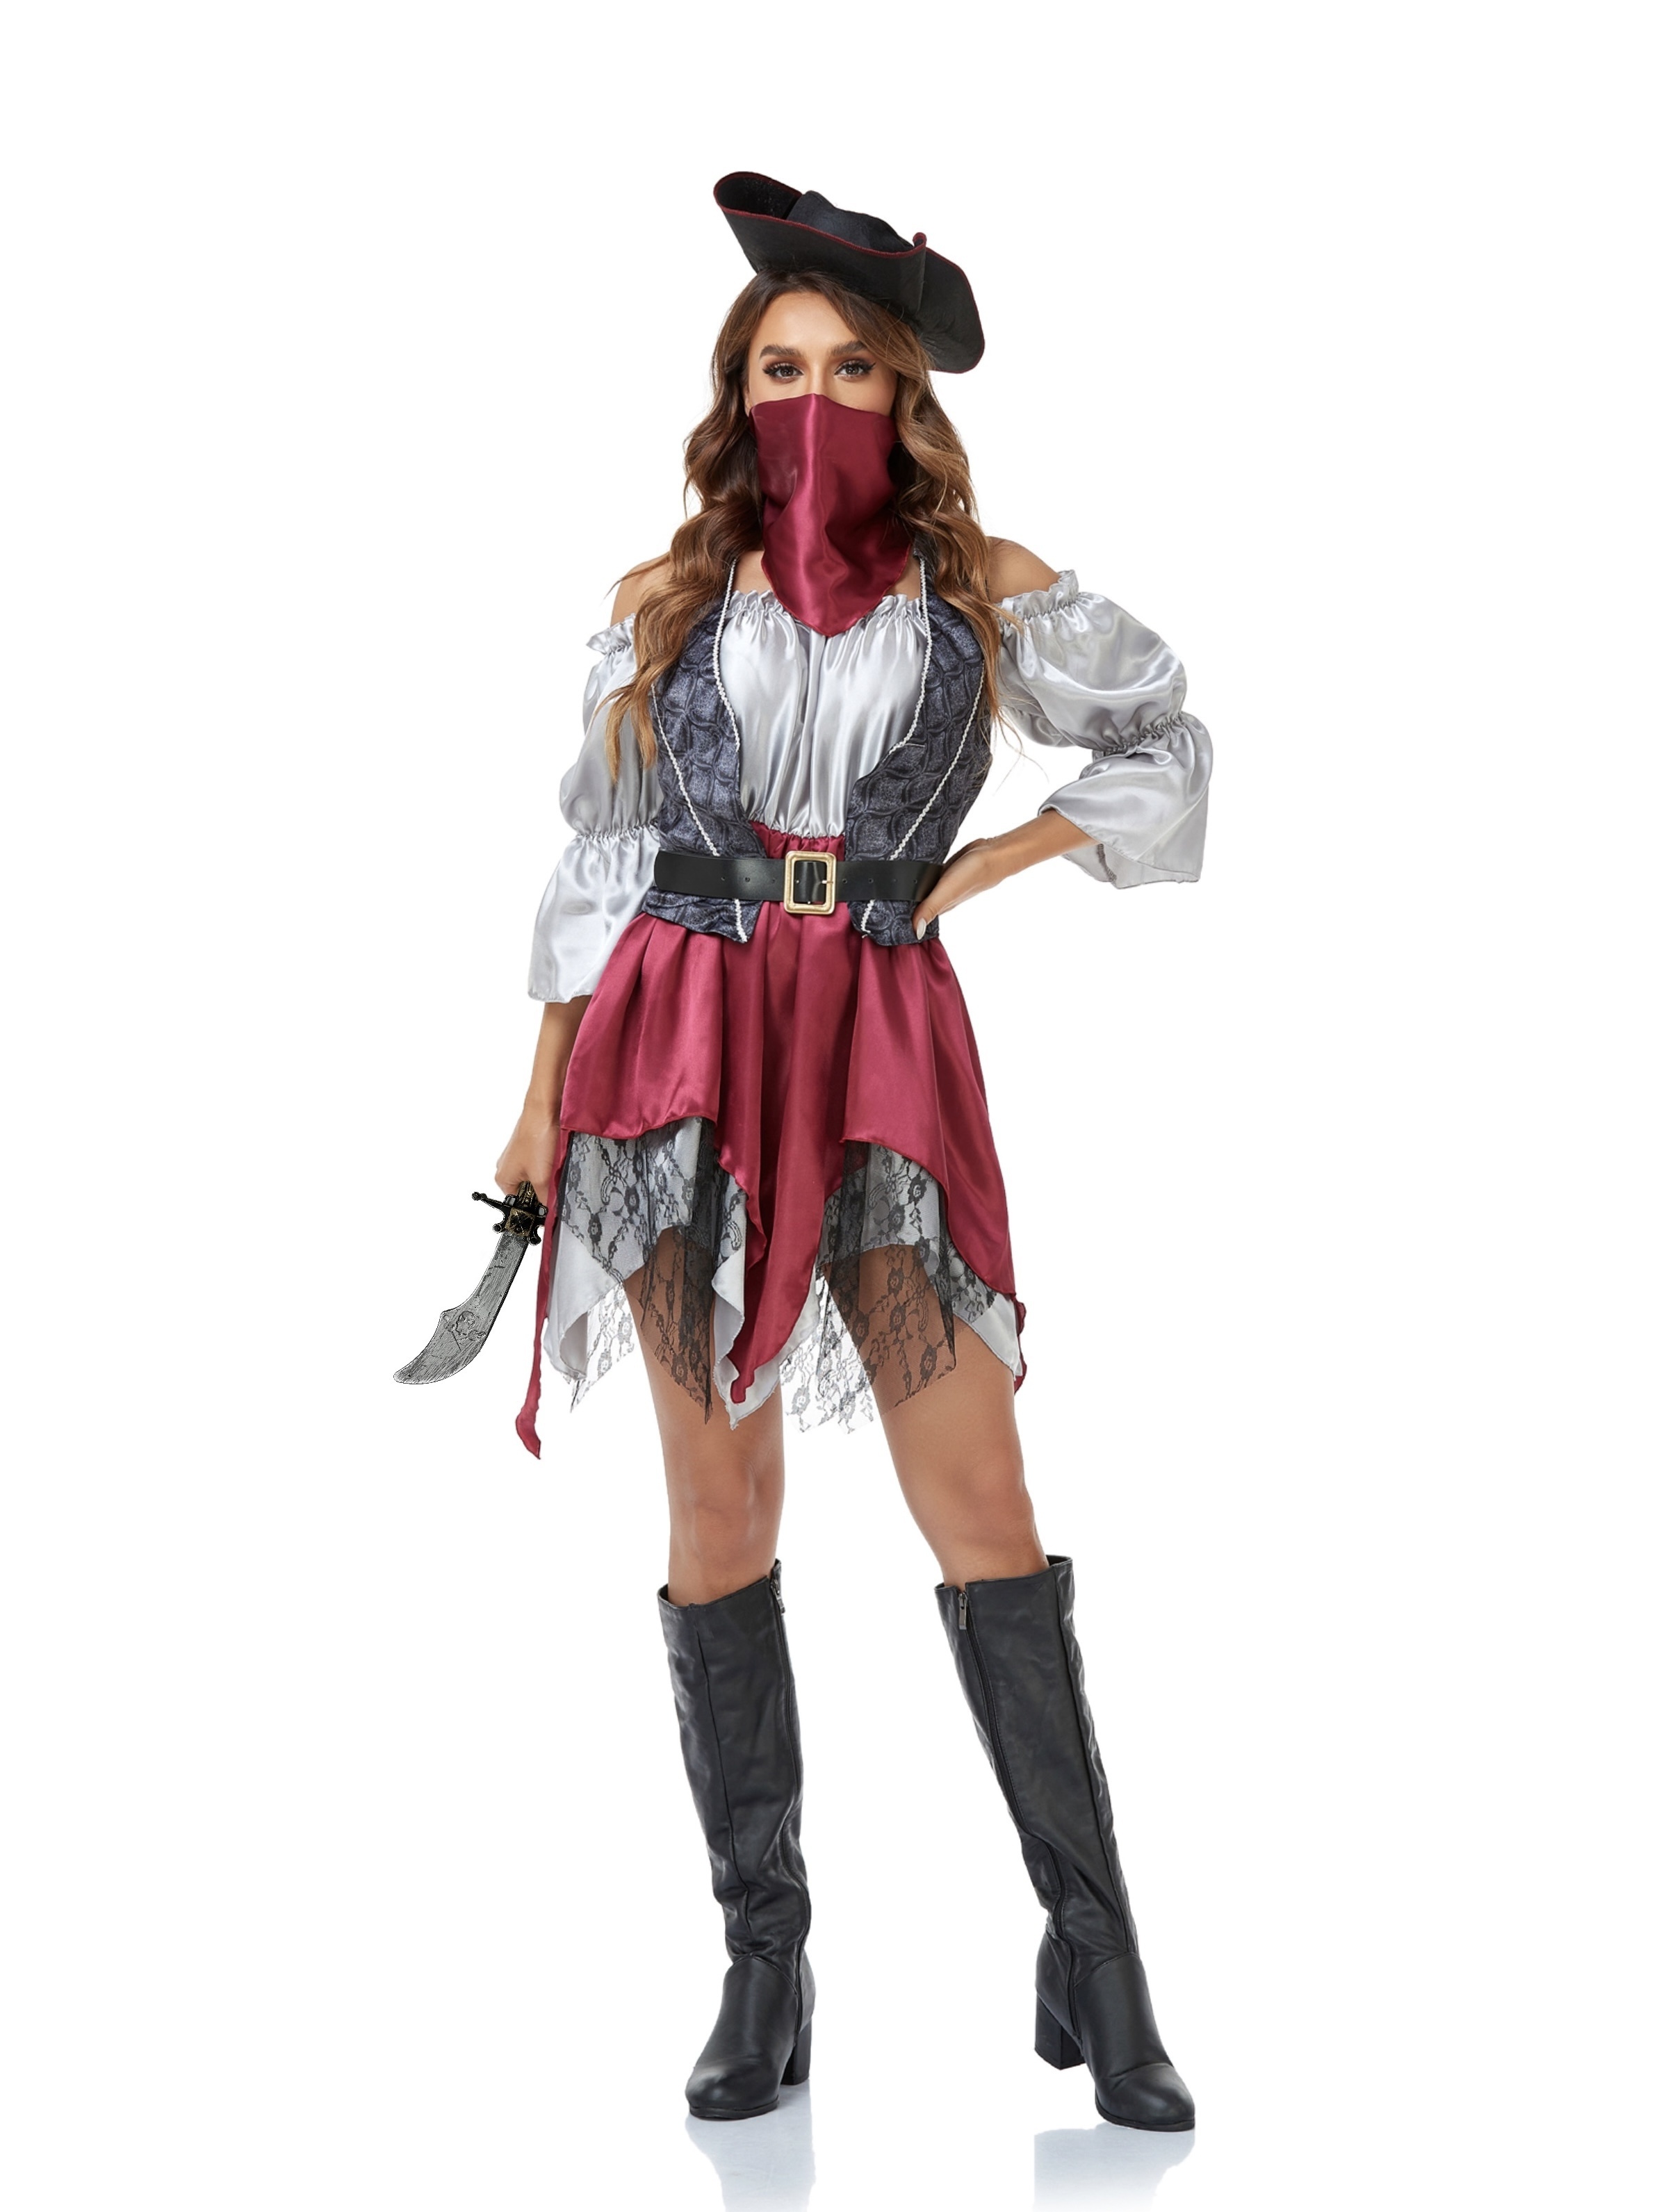 Disfraz de Pirata a Rayas para Hombre Adulto - Ideal para Carnaval y  Fiestas Temáticas